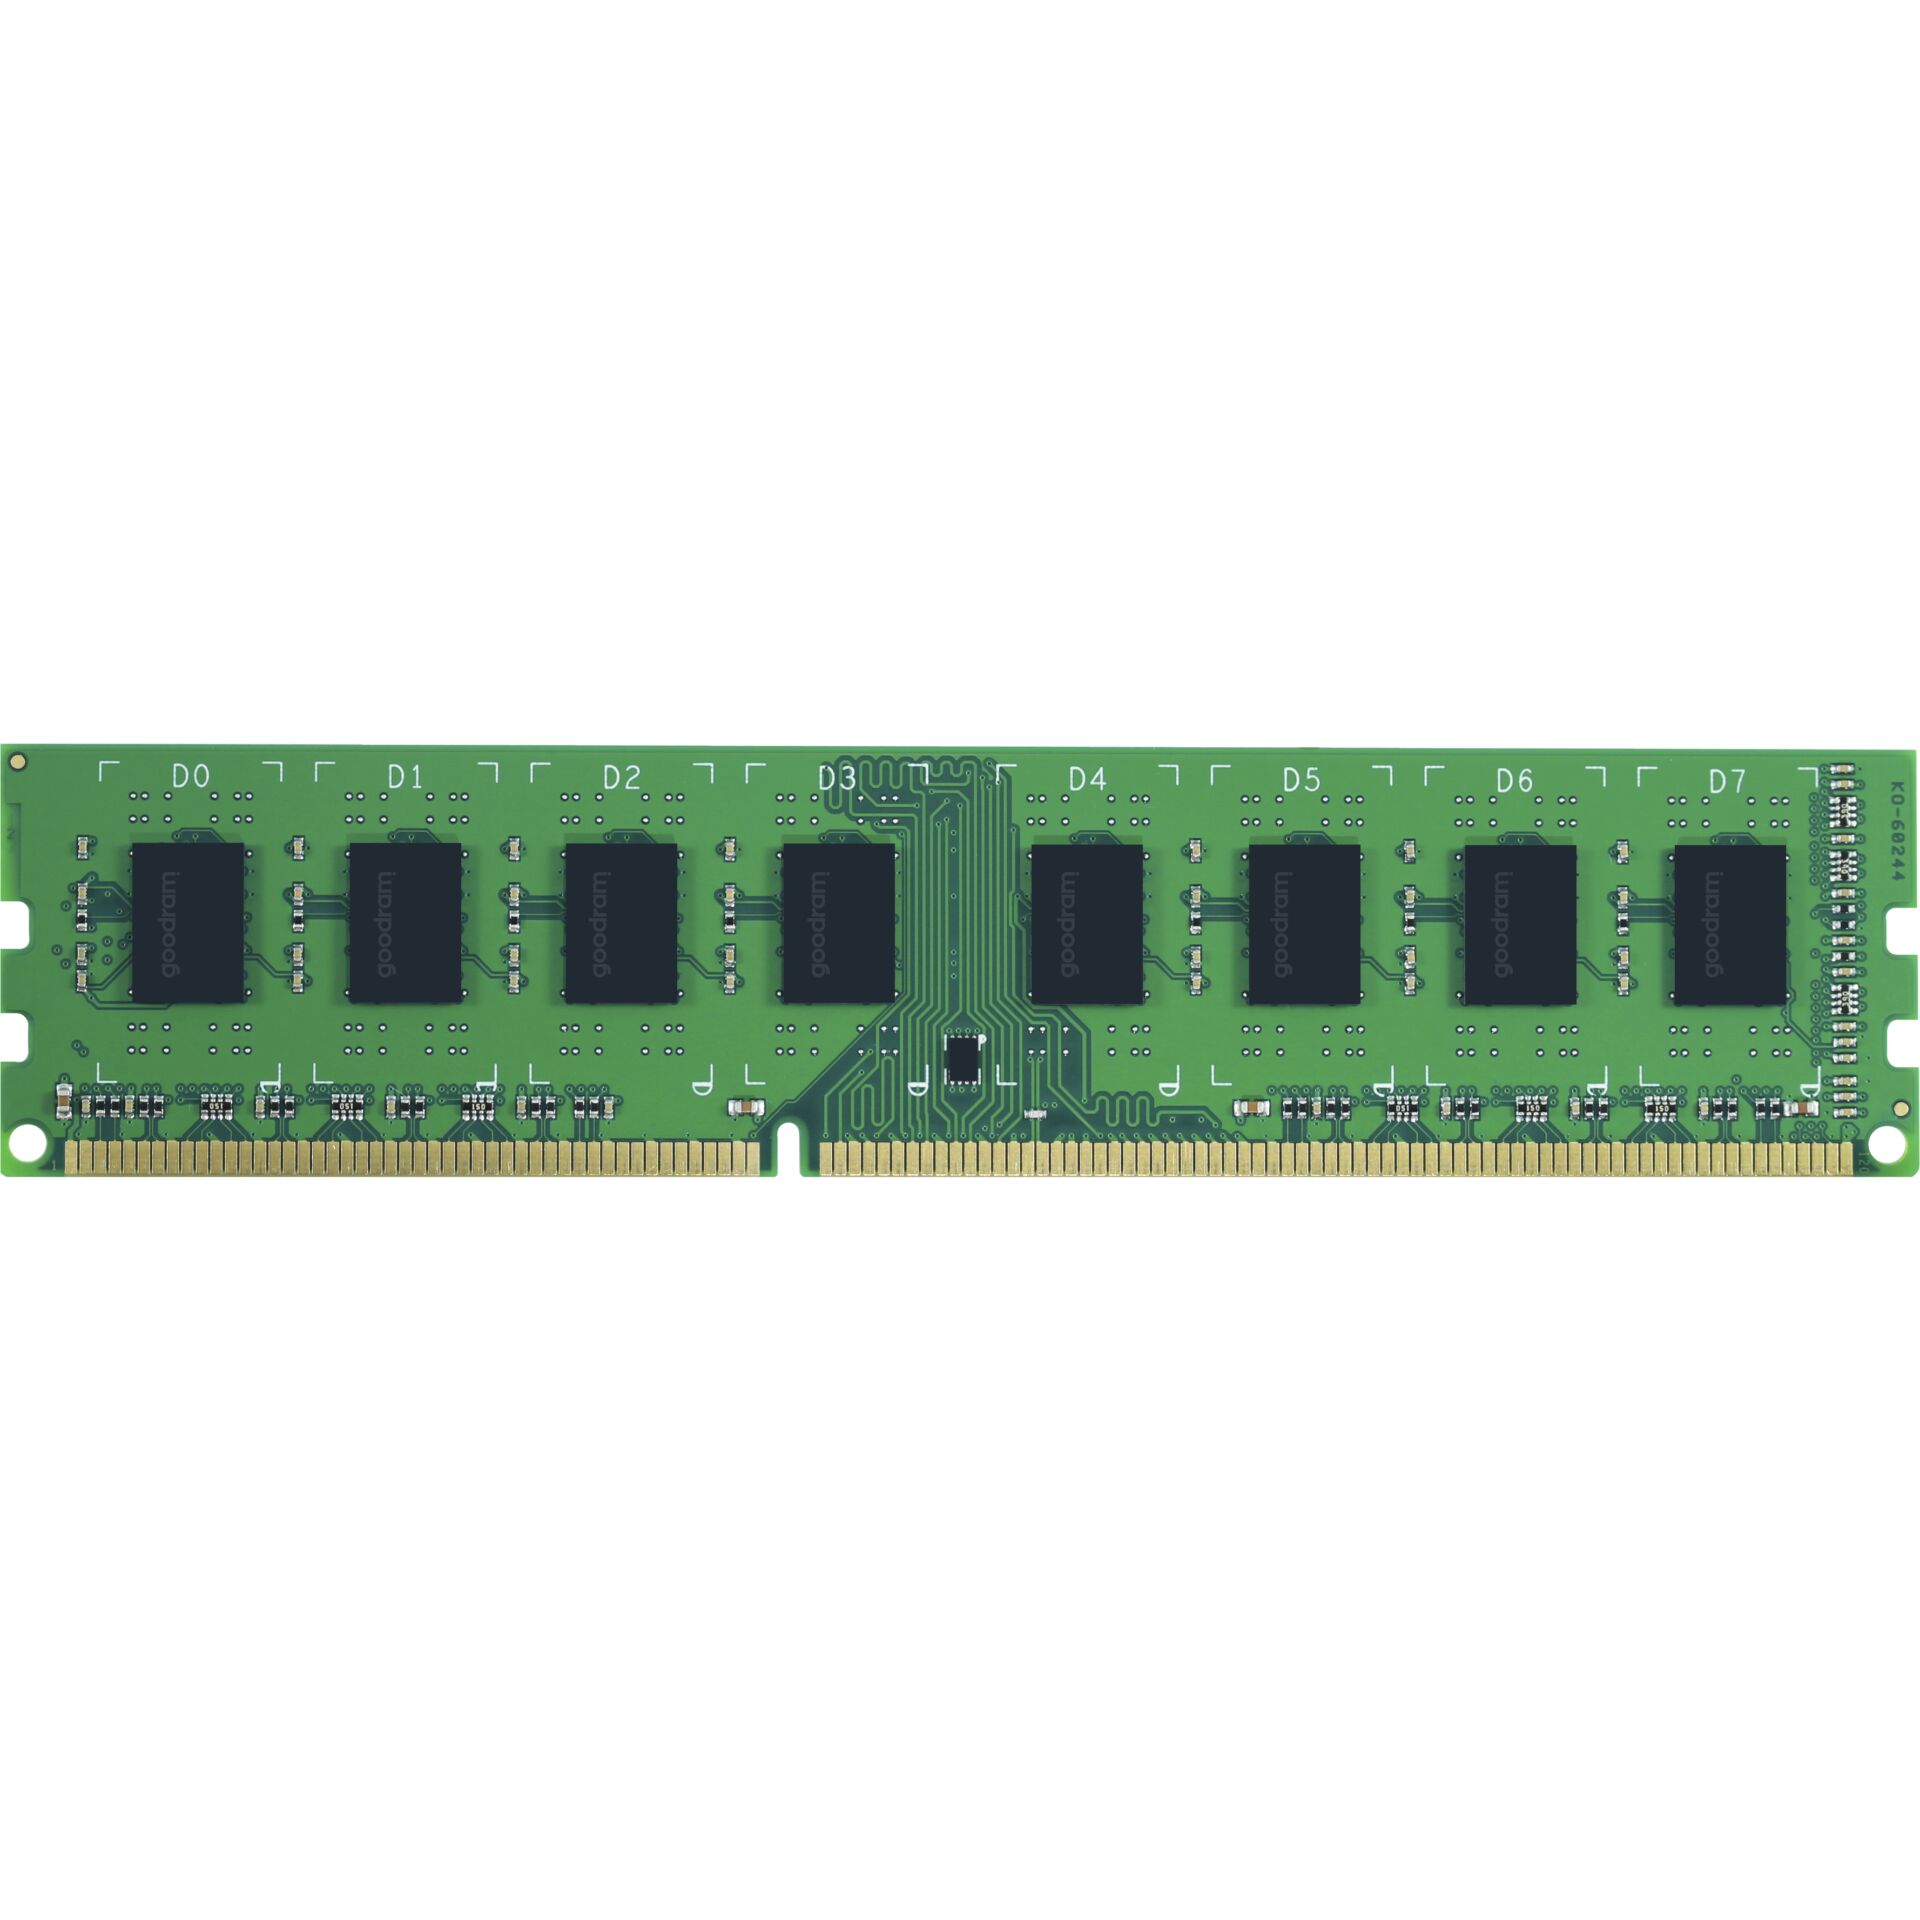 DDR3RAM 8GB DDR3-1600 Goodram, CL11 